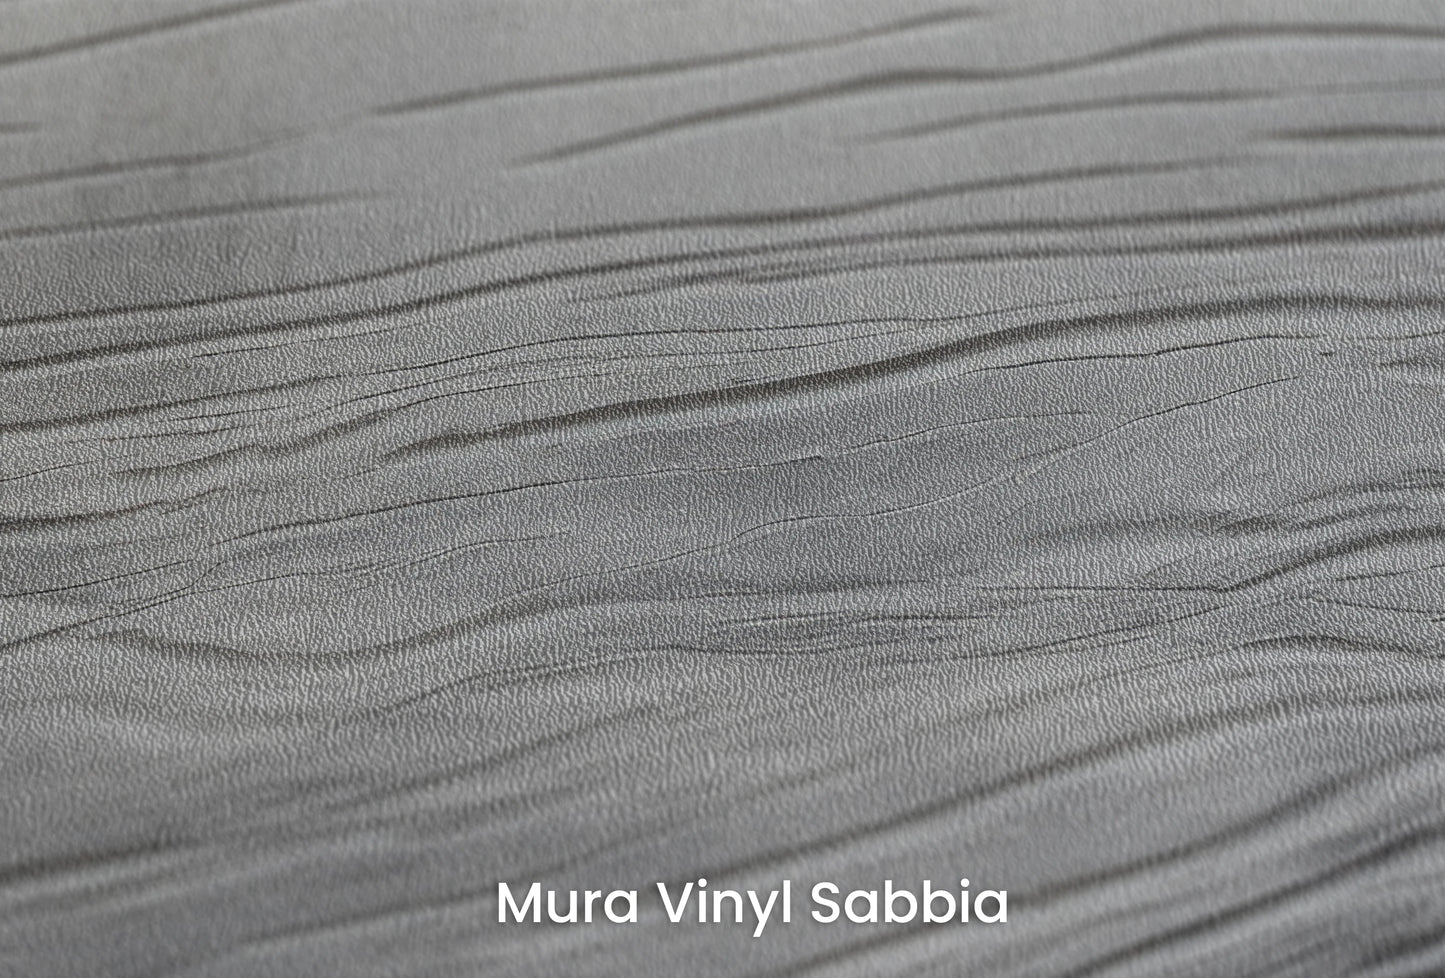 Zbliżenie na artystyczną fototapetę o nazwie Monochrome Current na podłożu Mura Vinyl Sabbia struktura grubego ziarna piasku.